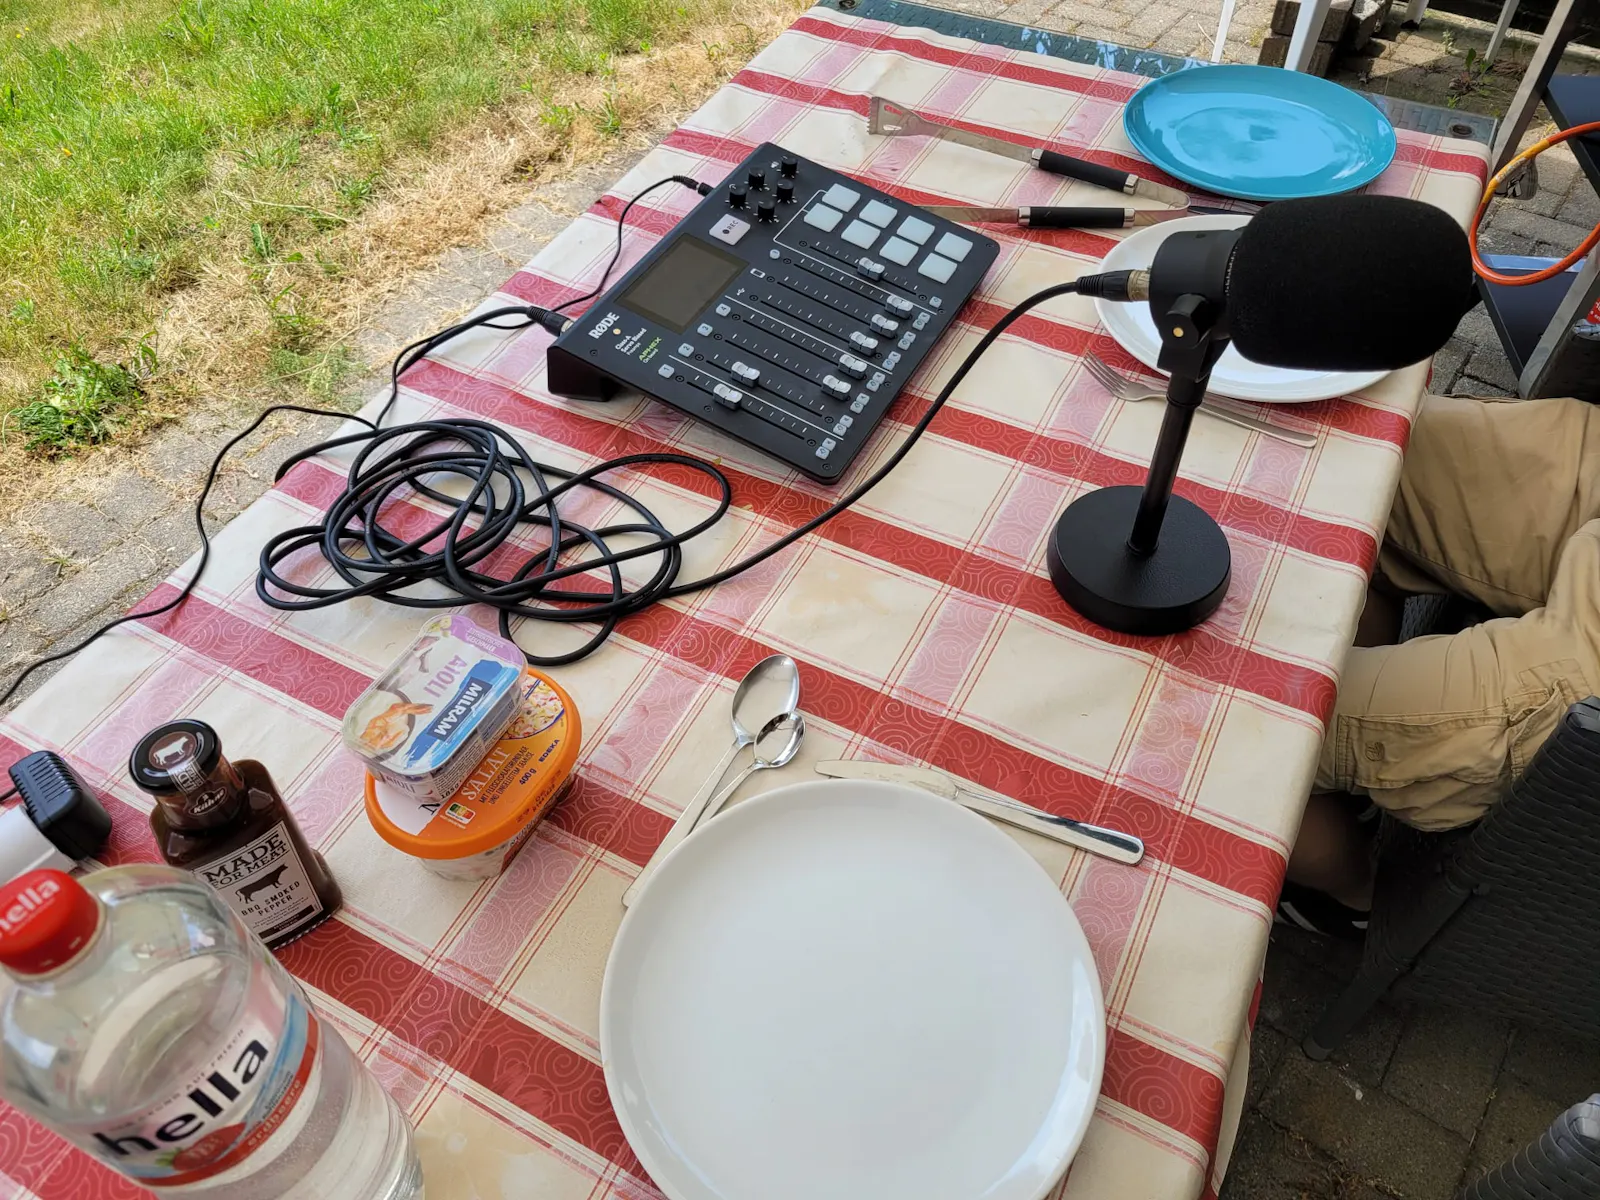 Halbes Podcast-Equipment, aufgebaut im Garten - umringt von Geschirr. Kurz vor Beginn unserer Grill-Session